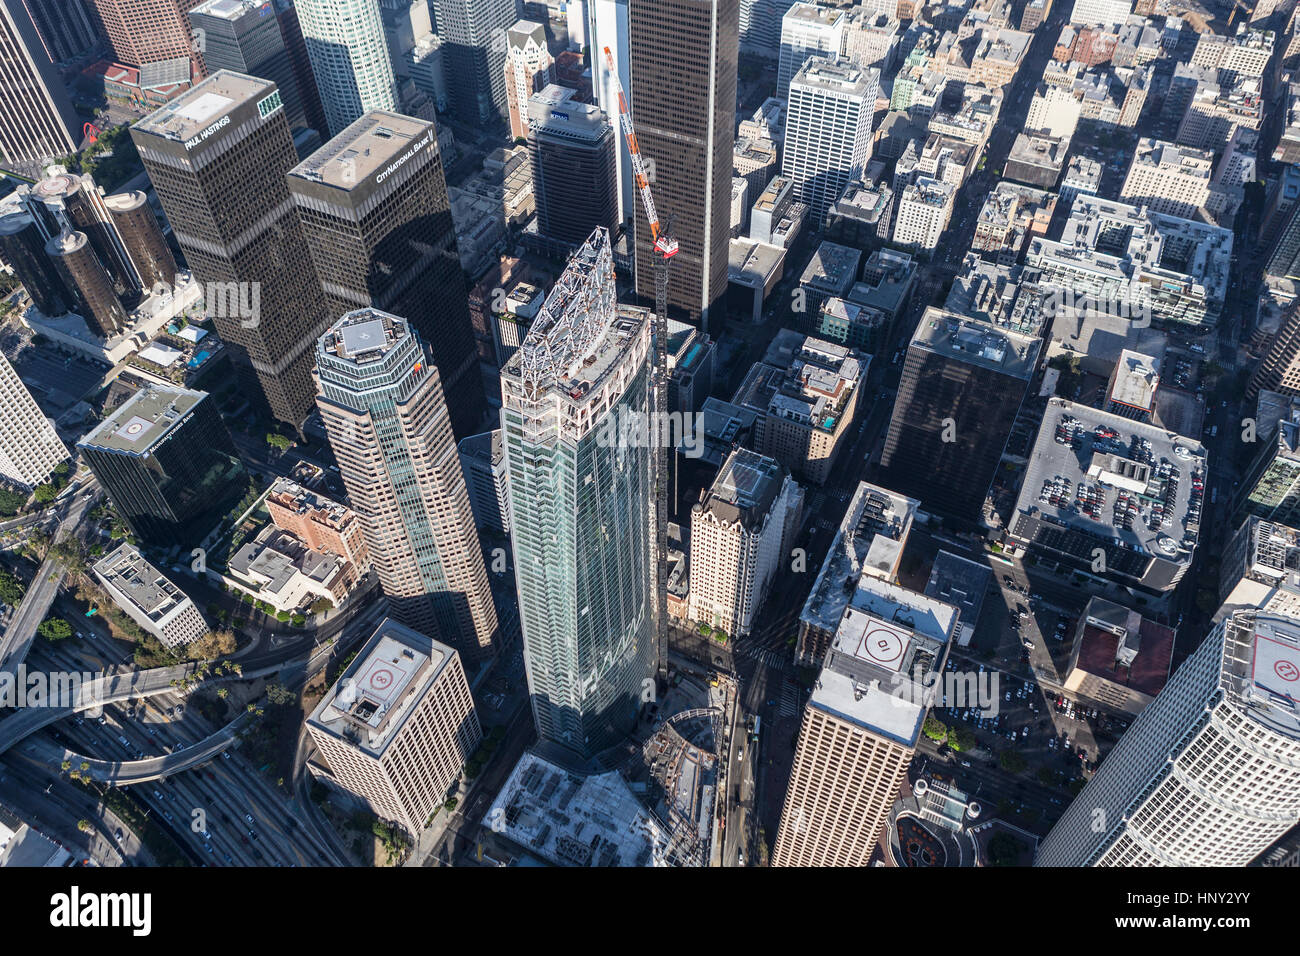 Los Angeles, Californie, USA - 6 août 2016 : Wilshire Grand Centre dans le centre-ville de Los Angeles est presque terminée. Les 1100 pieds de haut bâtiment est l'at Banque D'Images